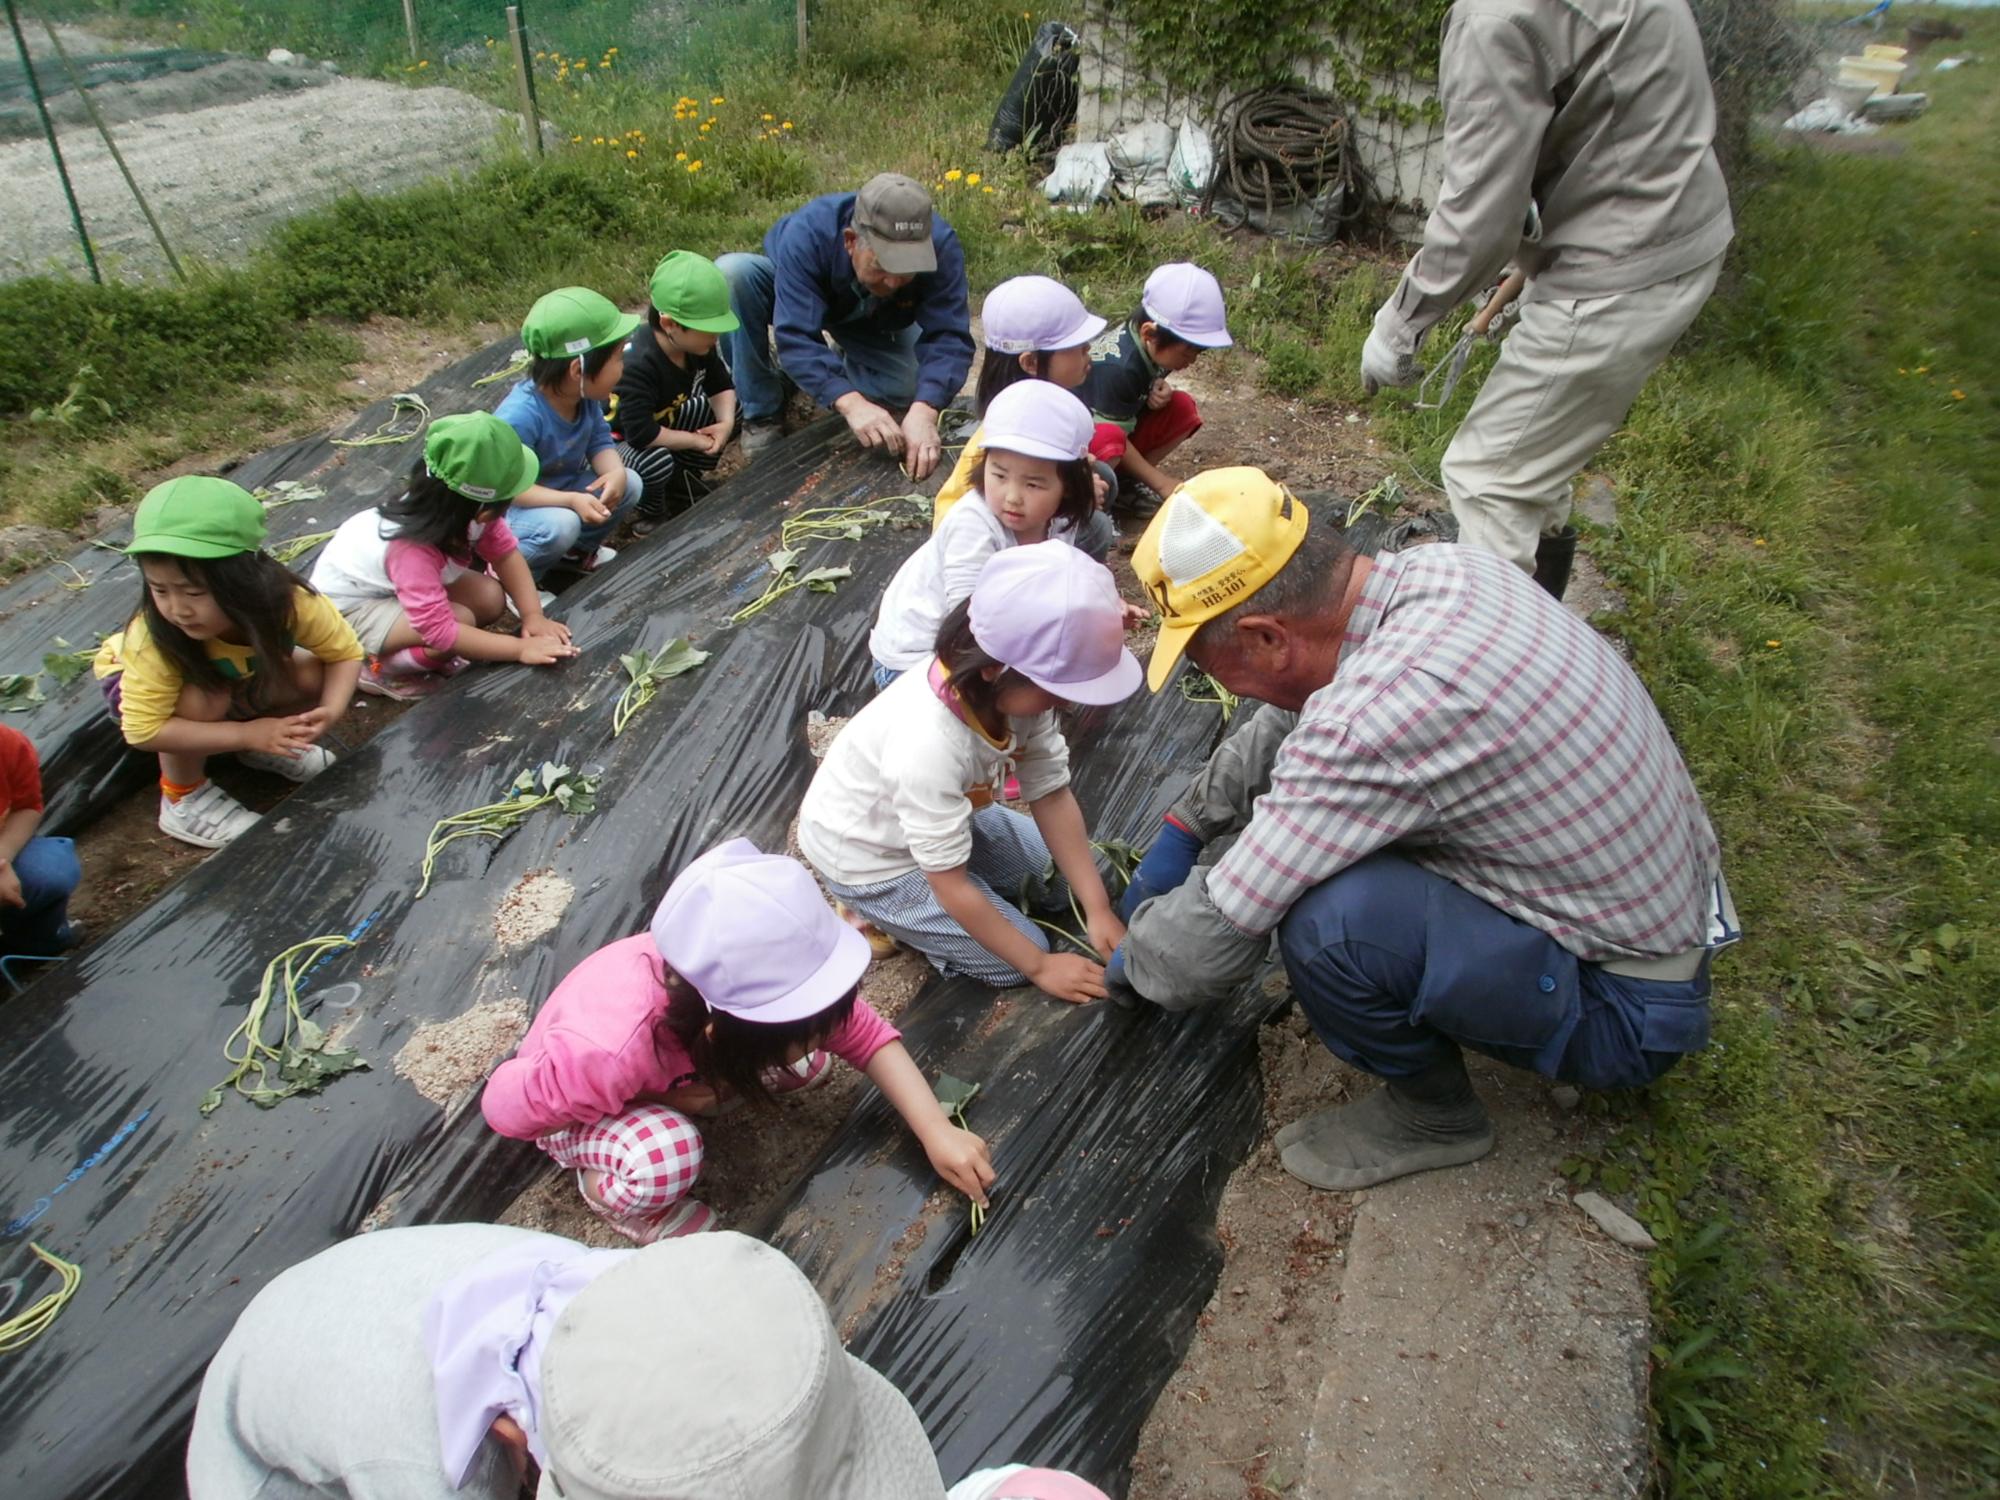 黄緑、ピンクの帽子をかぶった園児達が横一列に並んで、大人に教わりながらいもの苗植え体験をしている写真